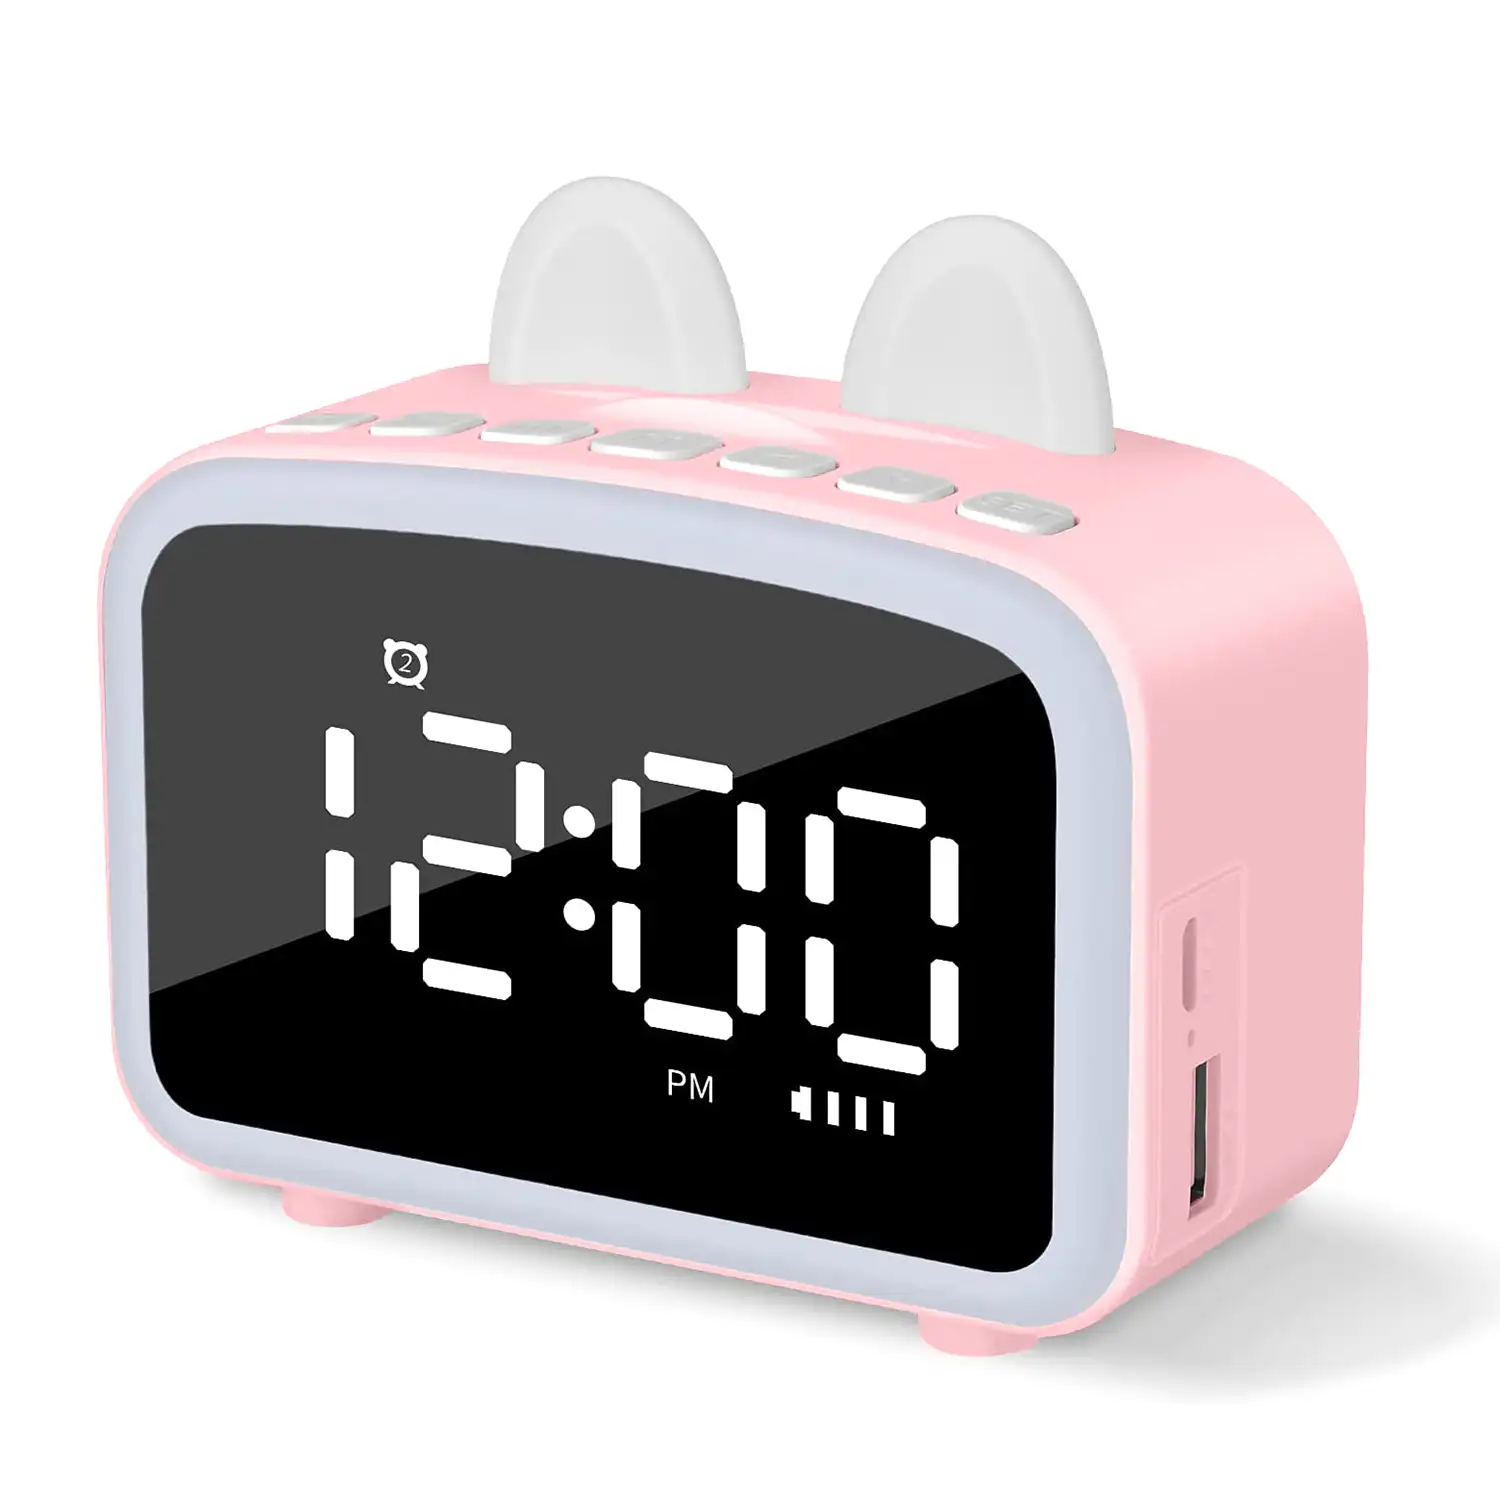 Reloj despertador LCD con luz nocturna, altavoz Bluetooth incorporado, termómetro, radio, soporte de smartphone. Batería recargable.